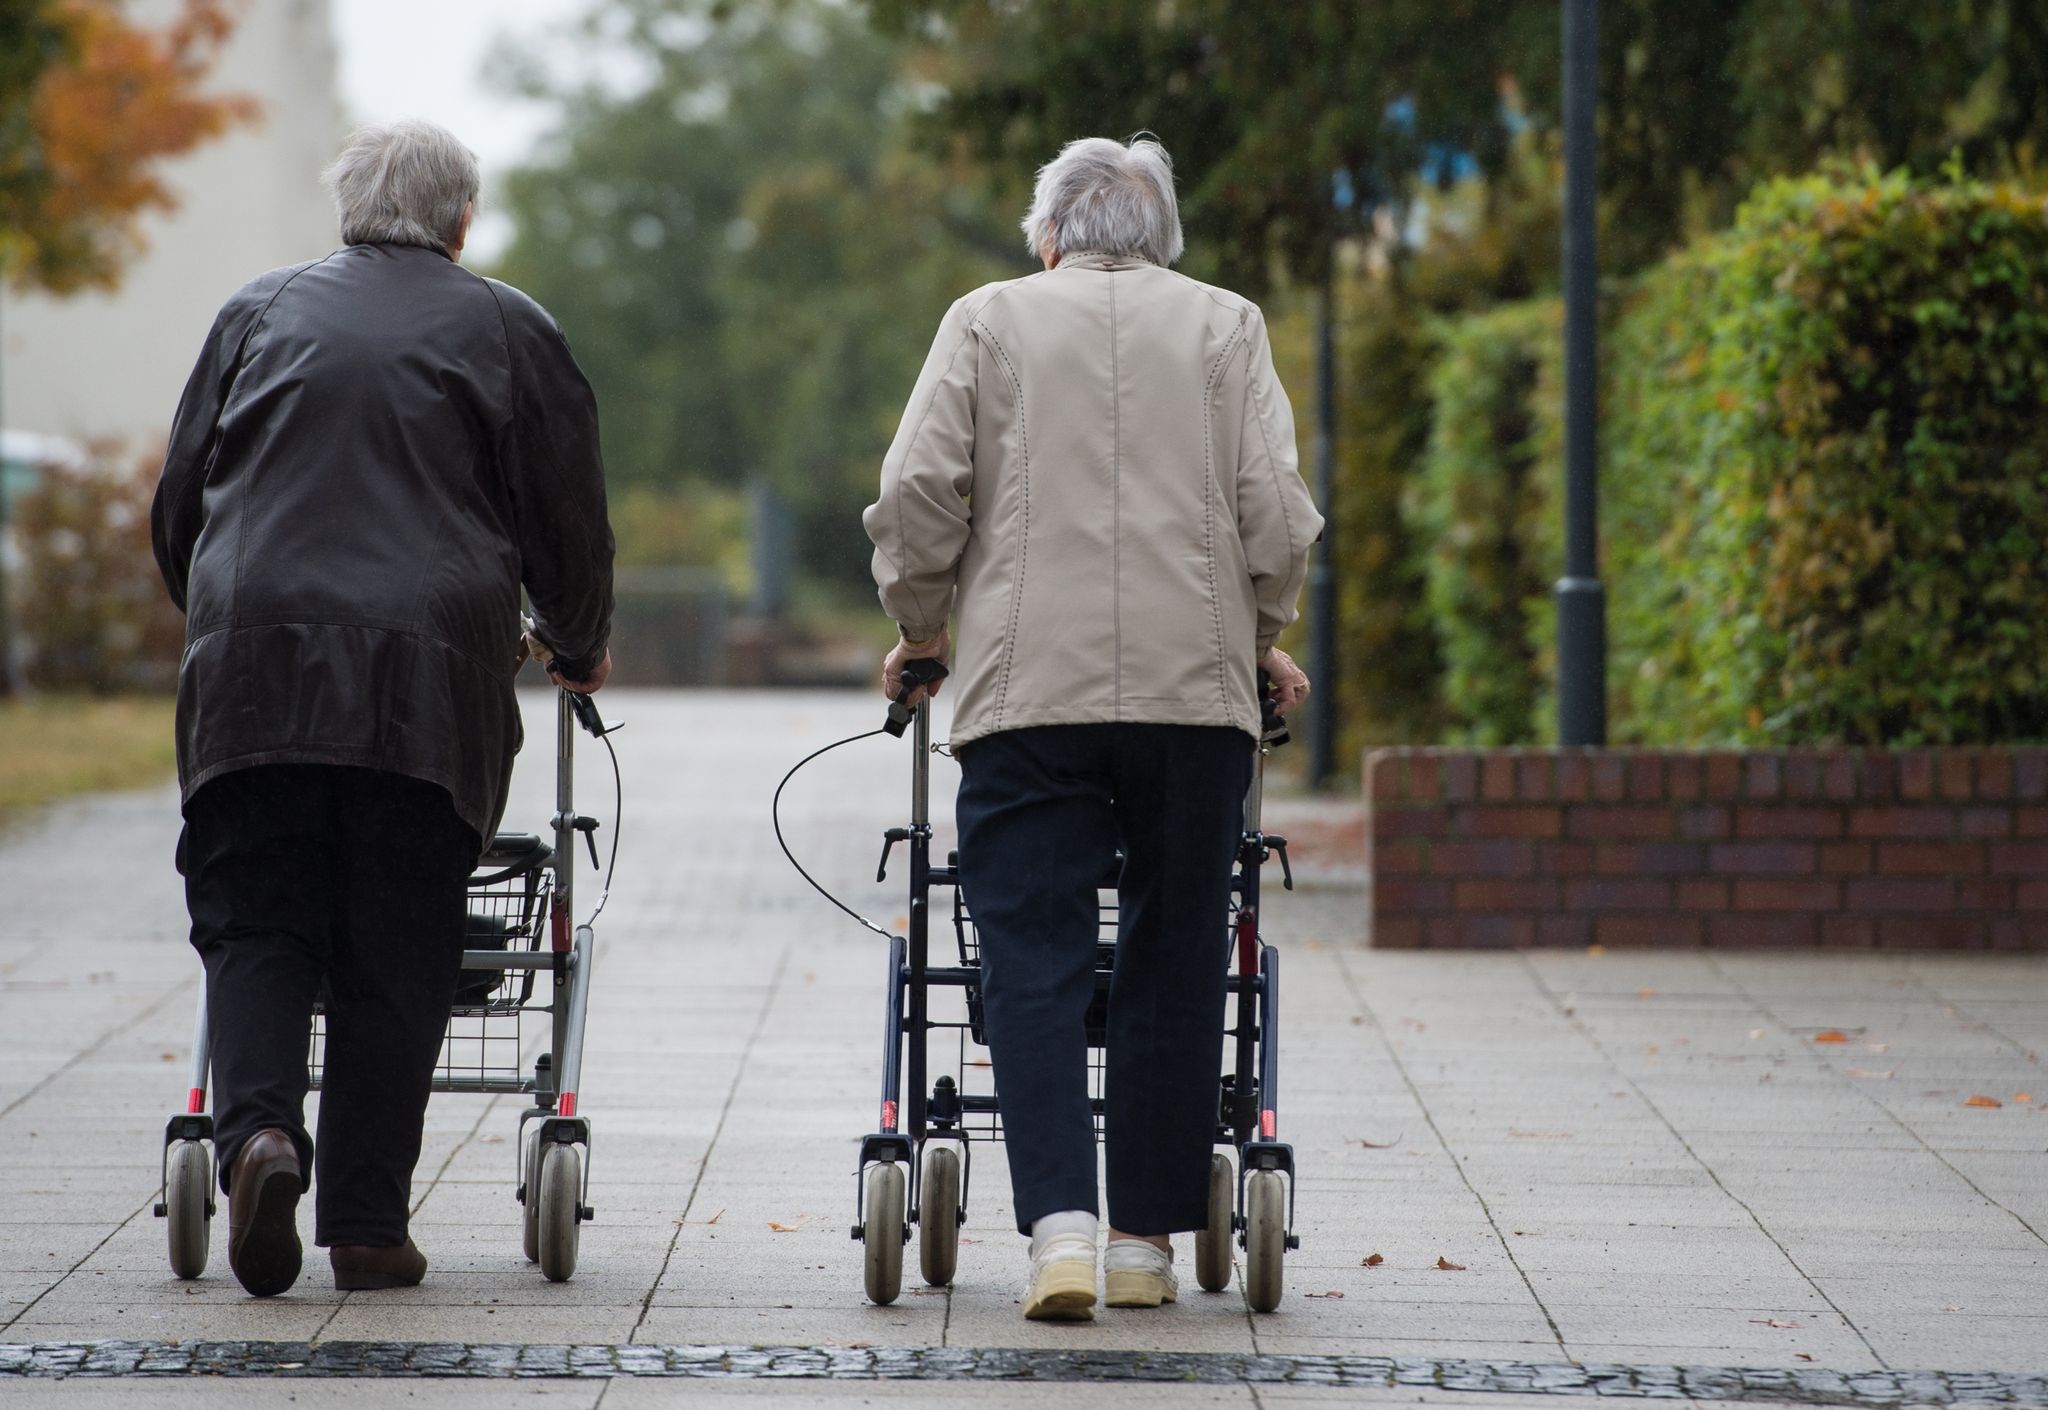 Viele ältere Menschen fühlen sich laut Forscher in ihren Wohnsituationen oft überfordert und einsam.